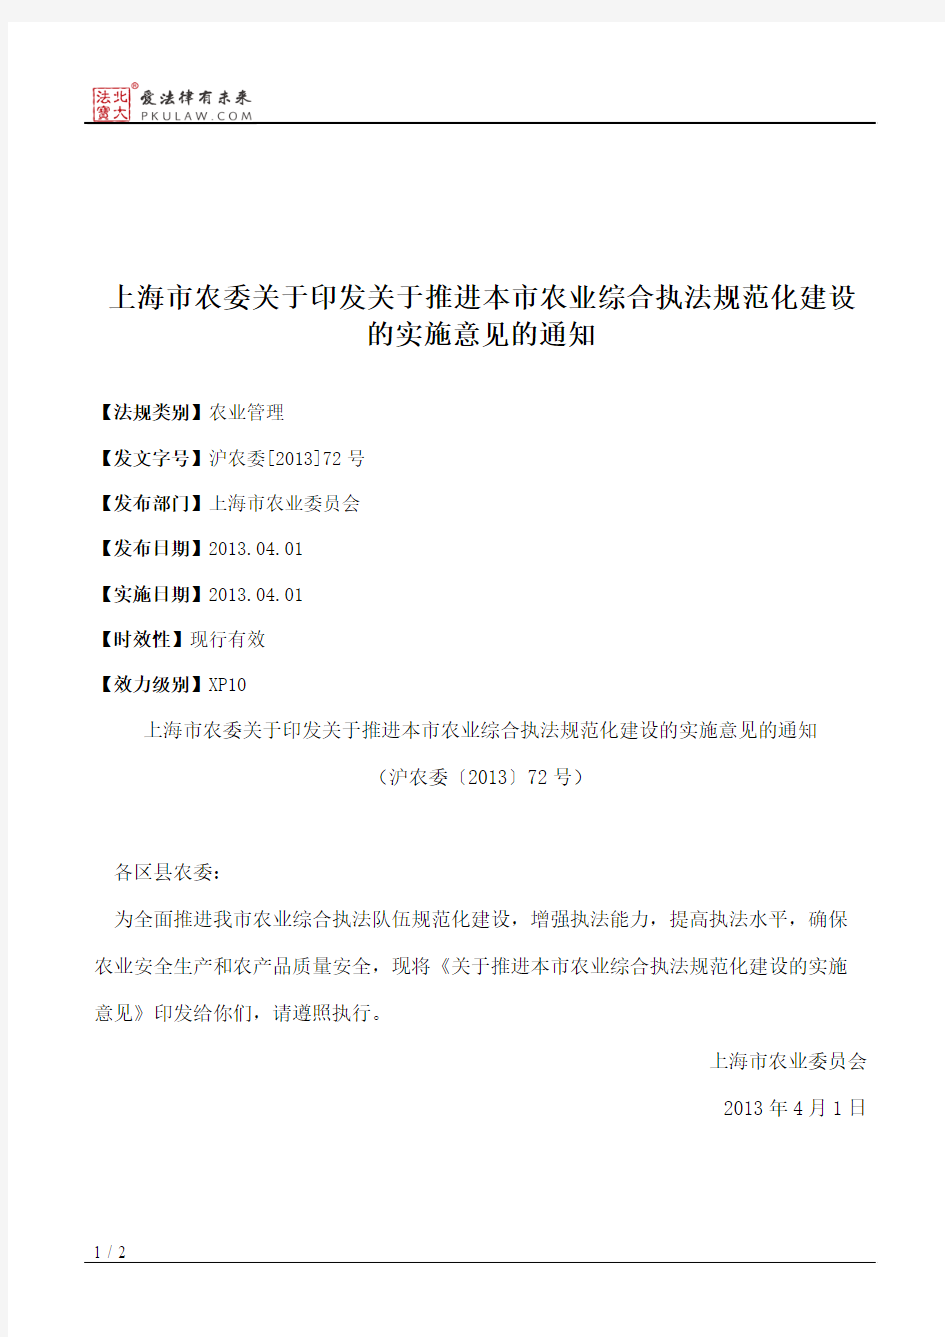 上海市农委关于印发关于推进本市农业综合执法规范化建设的实施意